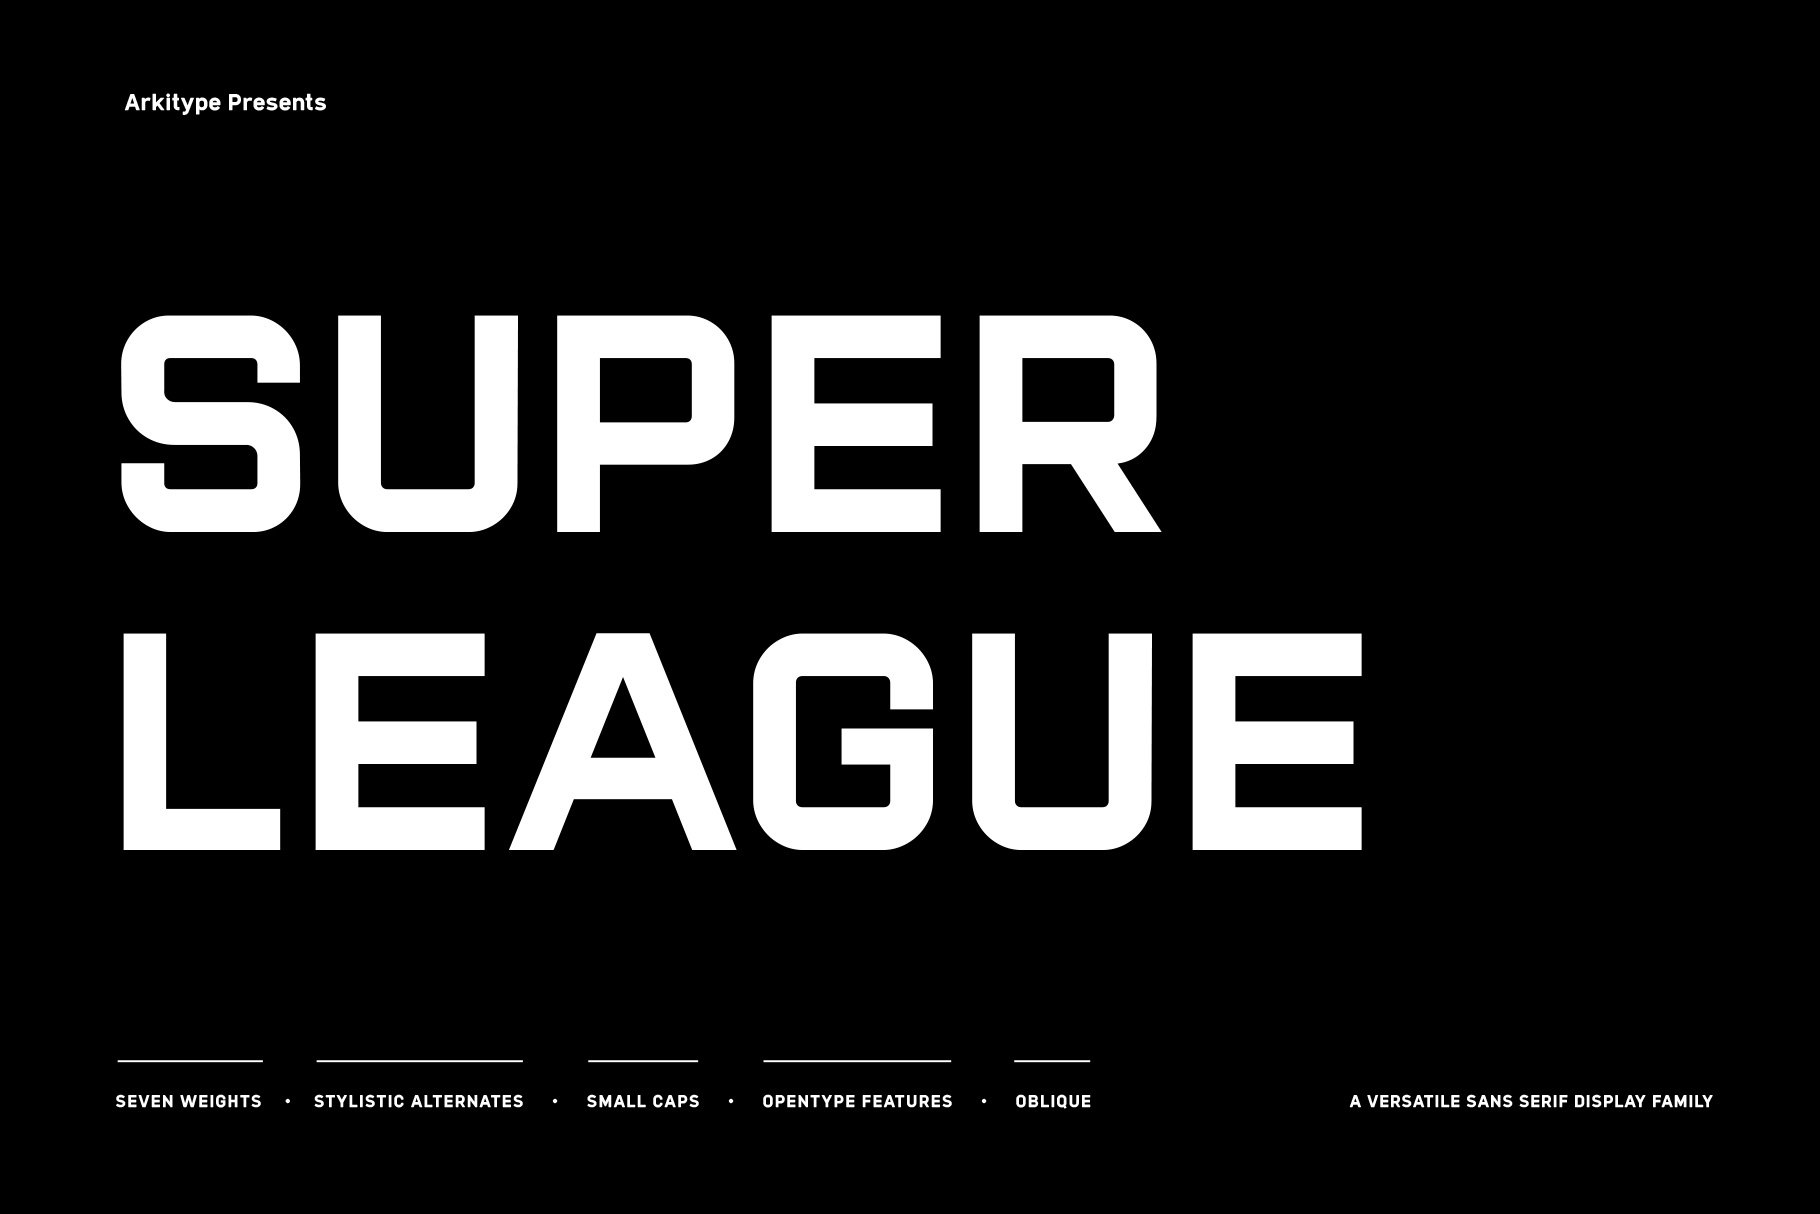 Super League Typeface cover image.